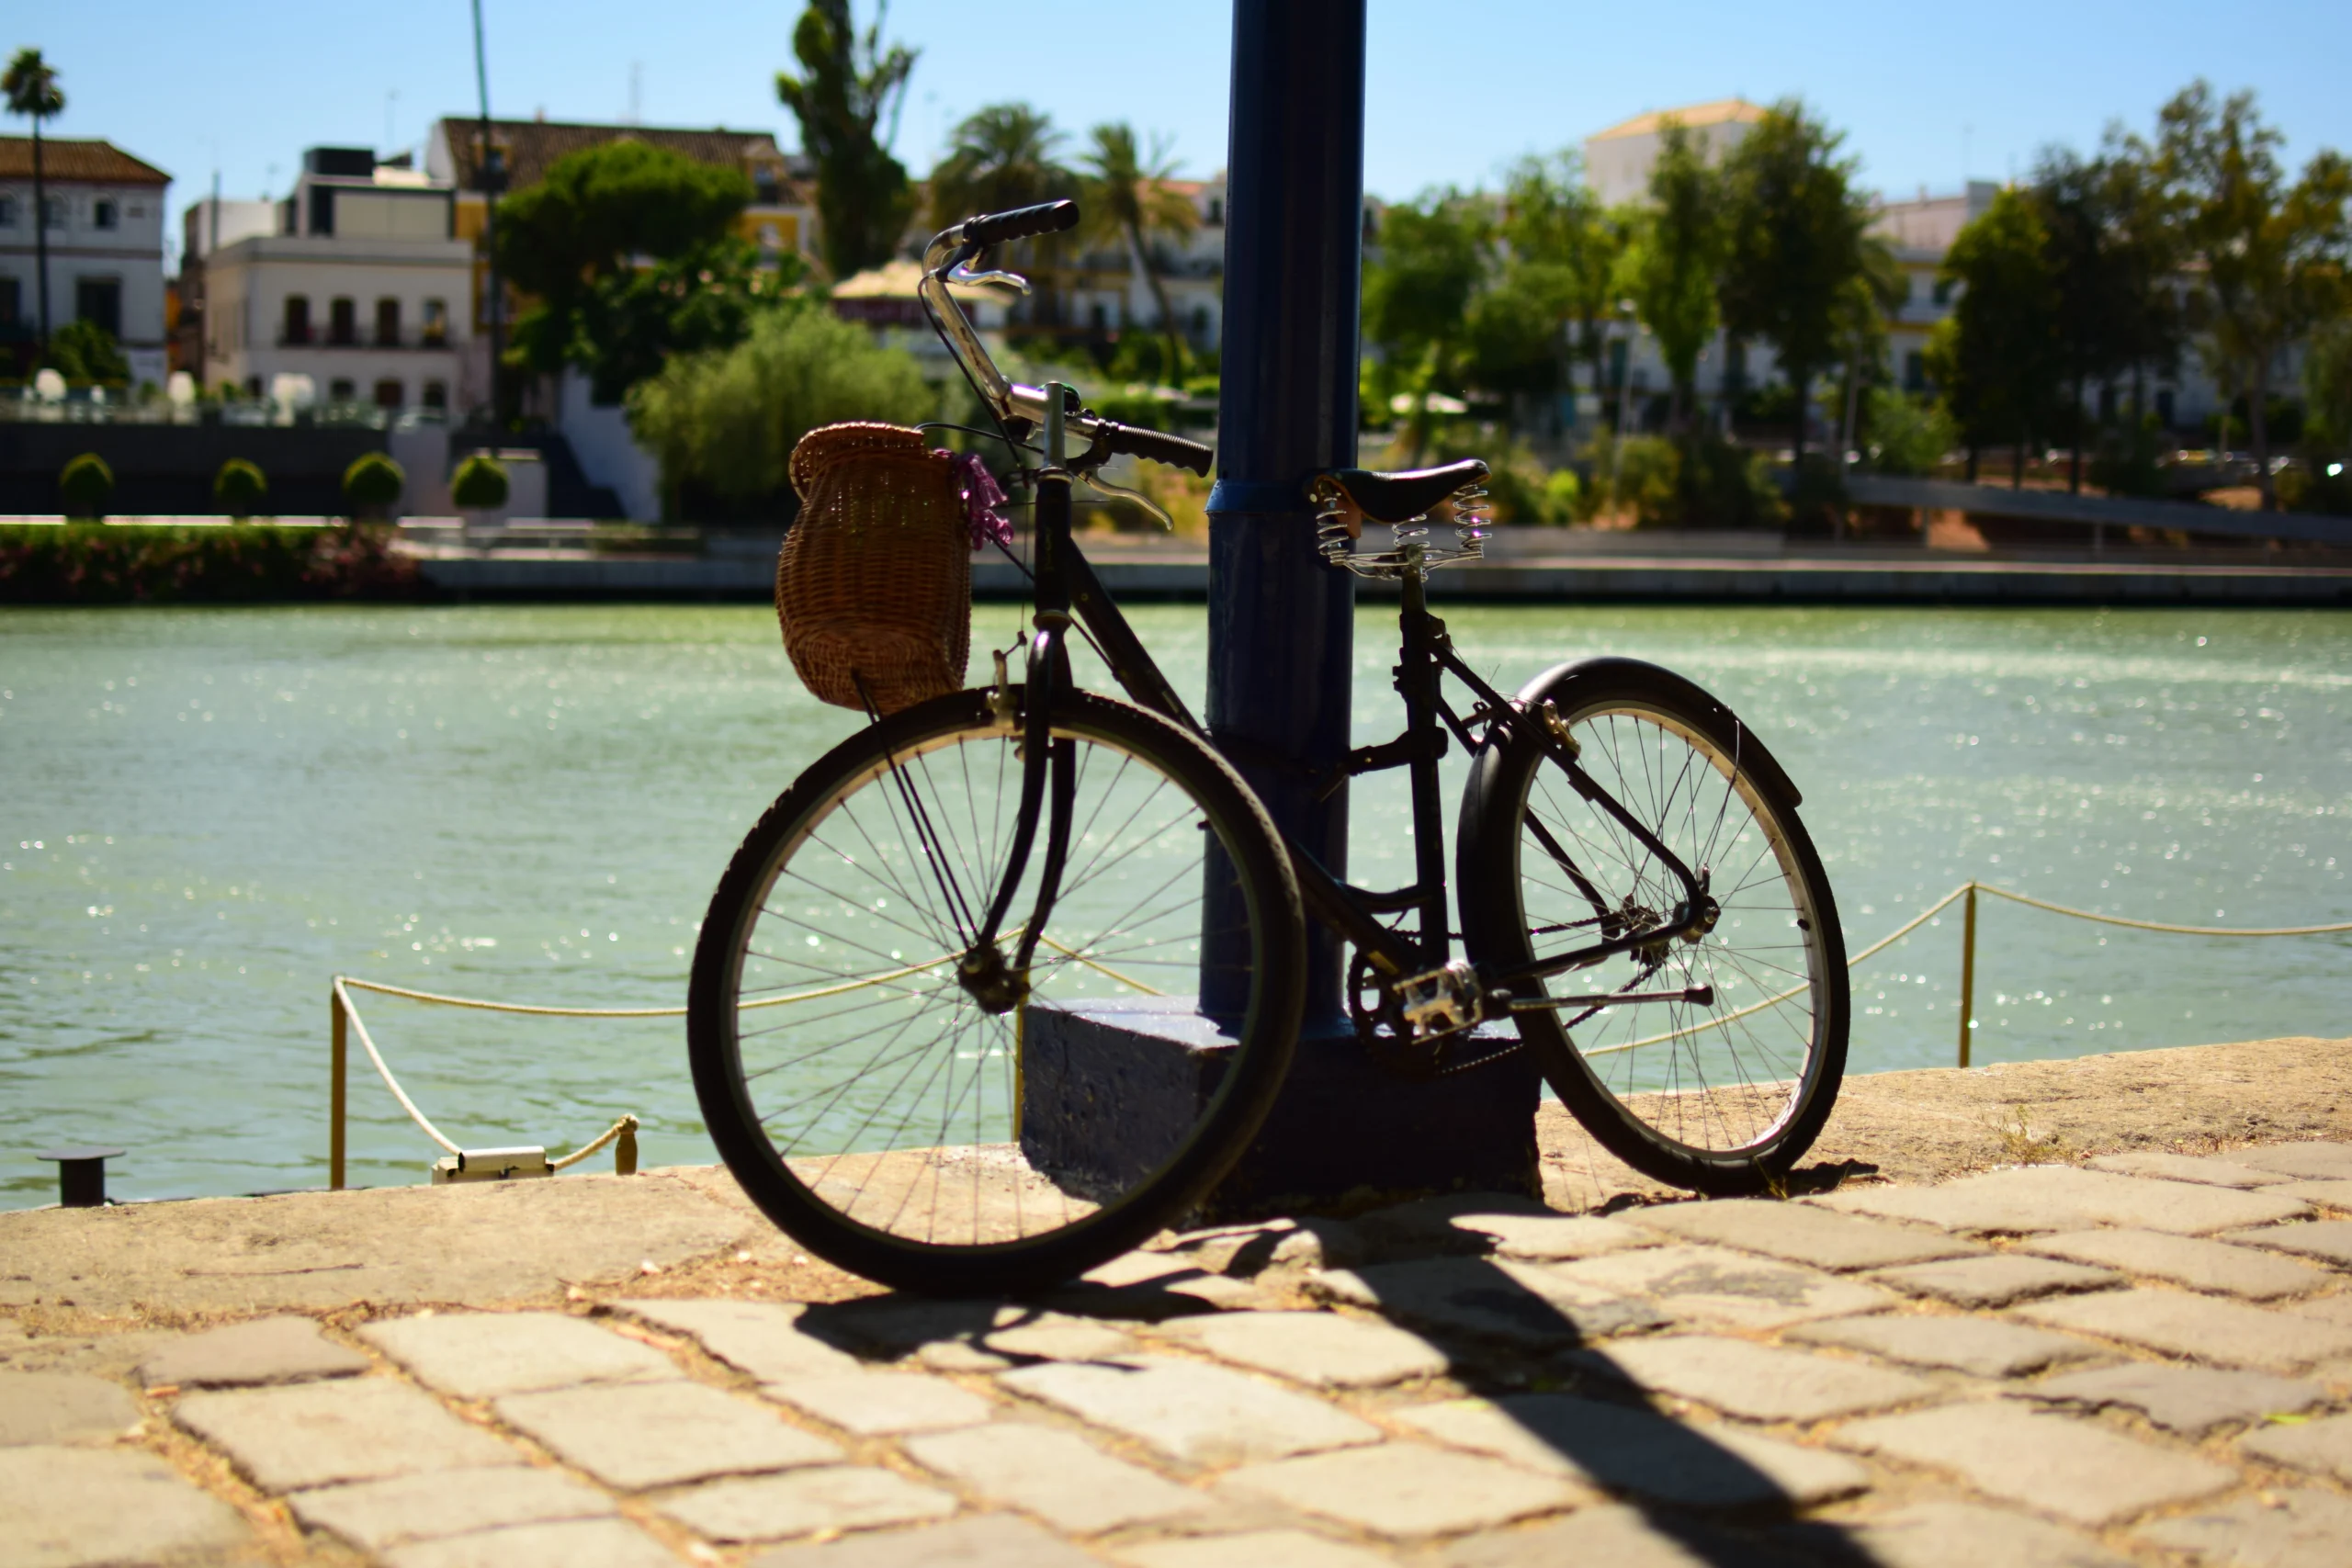 Je kunt door middel van een fietstour Sevilla in een korte tijd bekijken. Ga je dan zelf fietsen of neem je een gids mee?